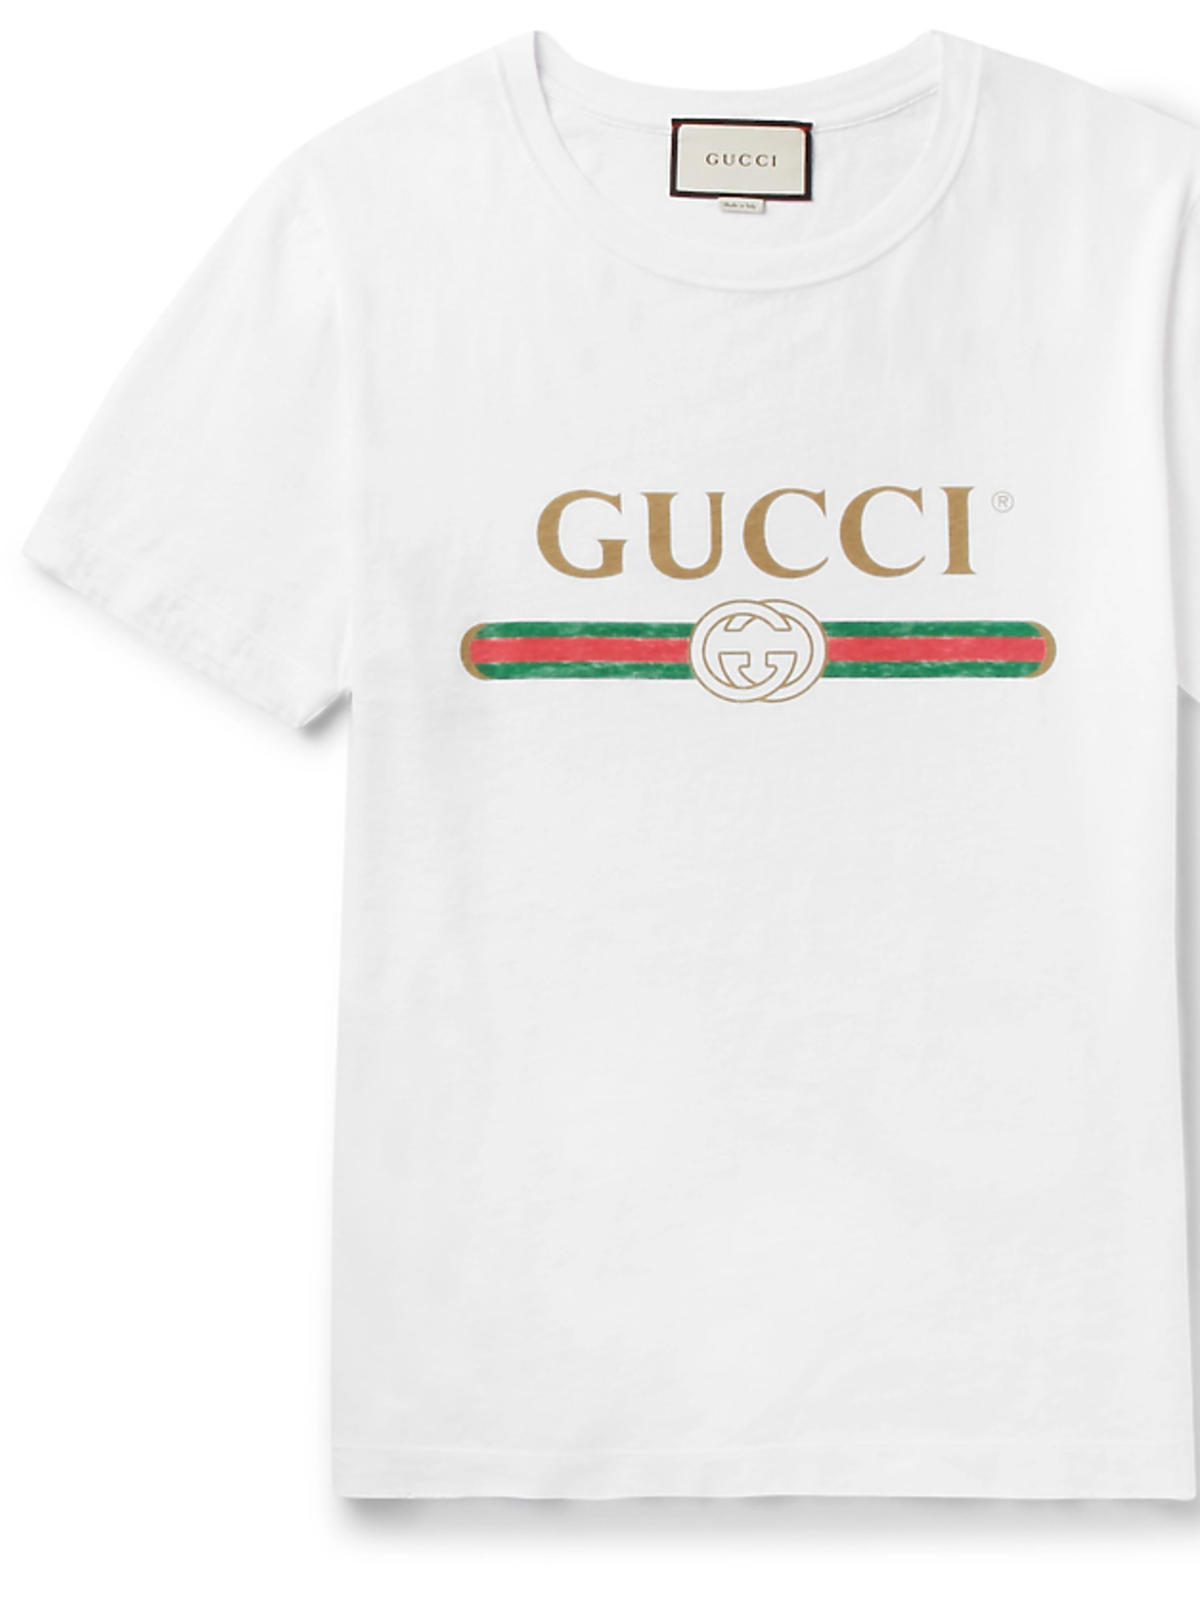 T-shirt z napisem Gucci, ok. 1700 zł